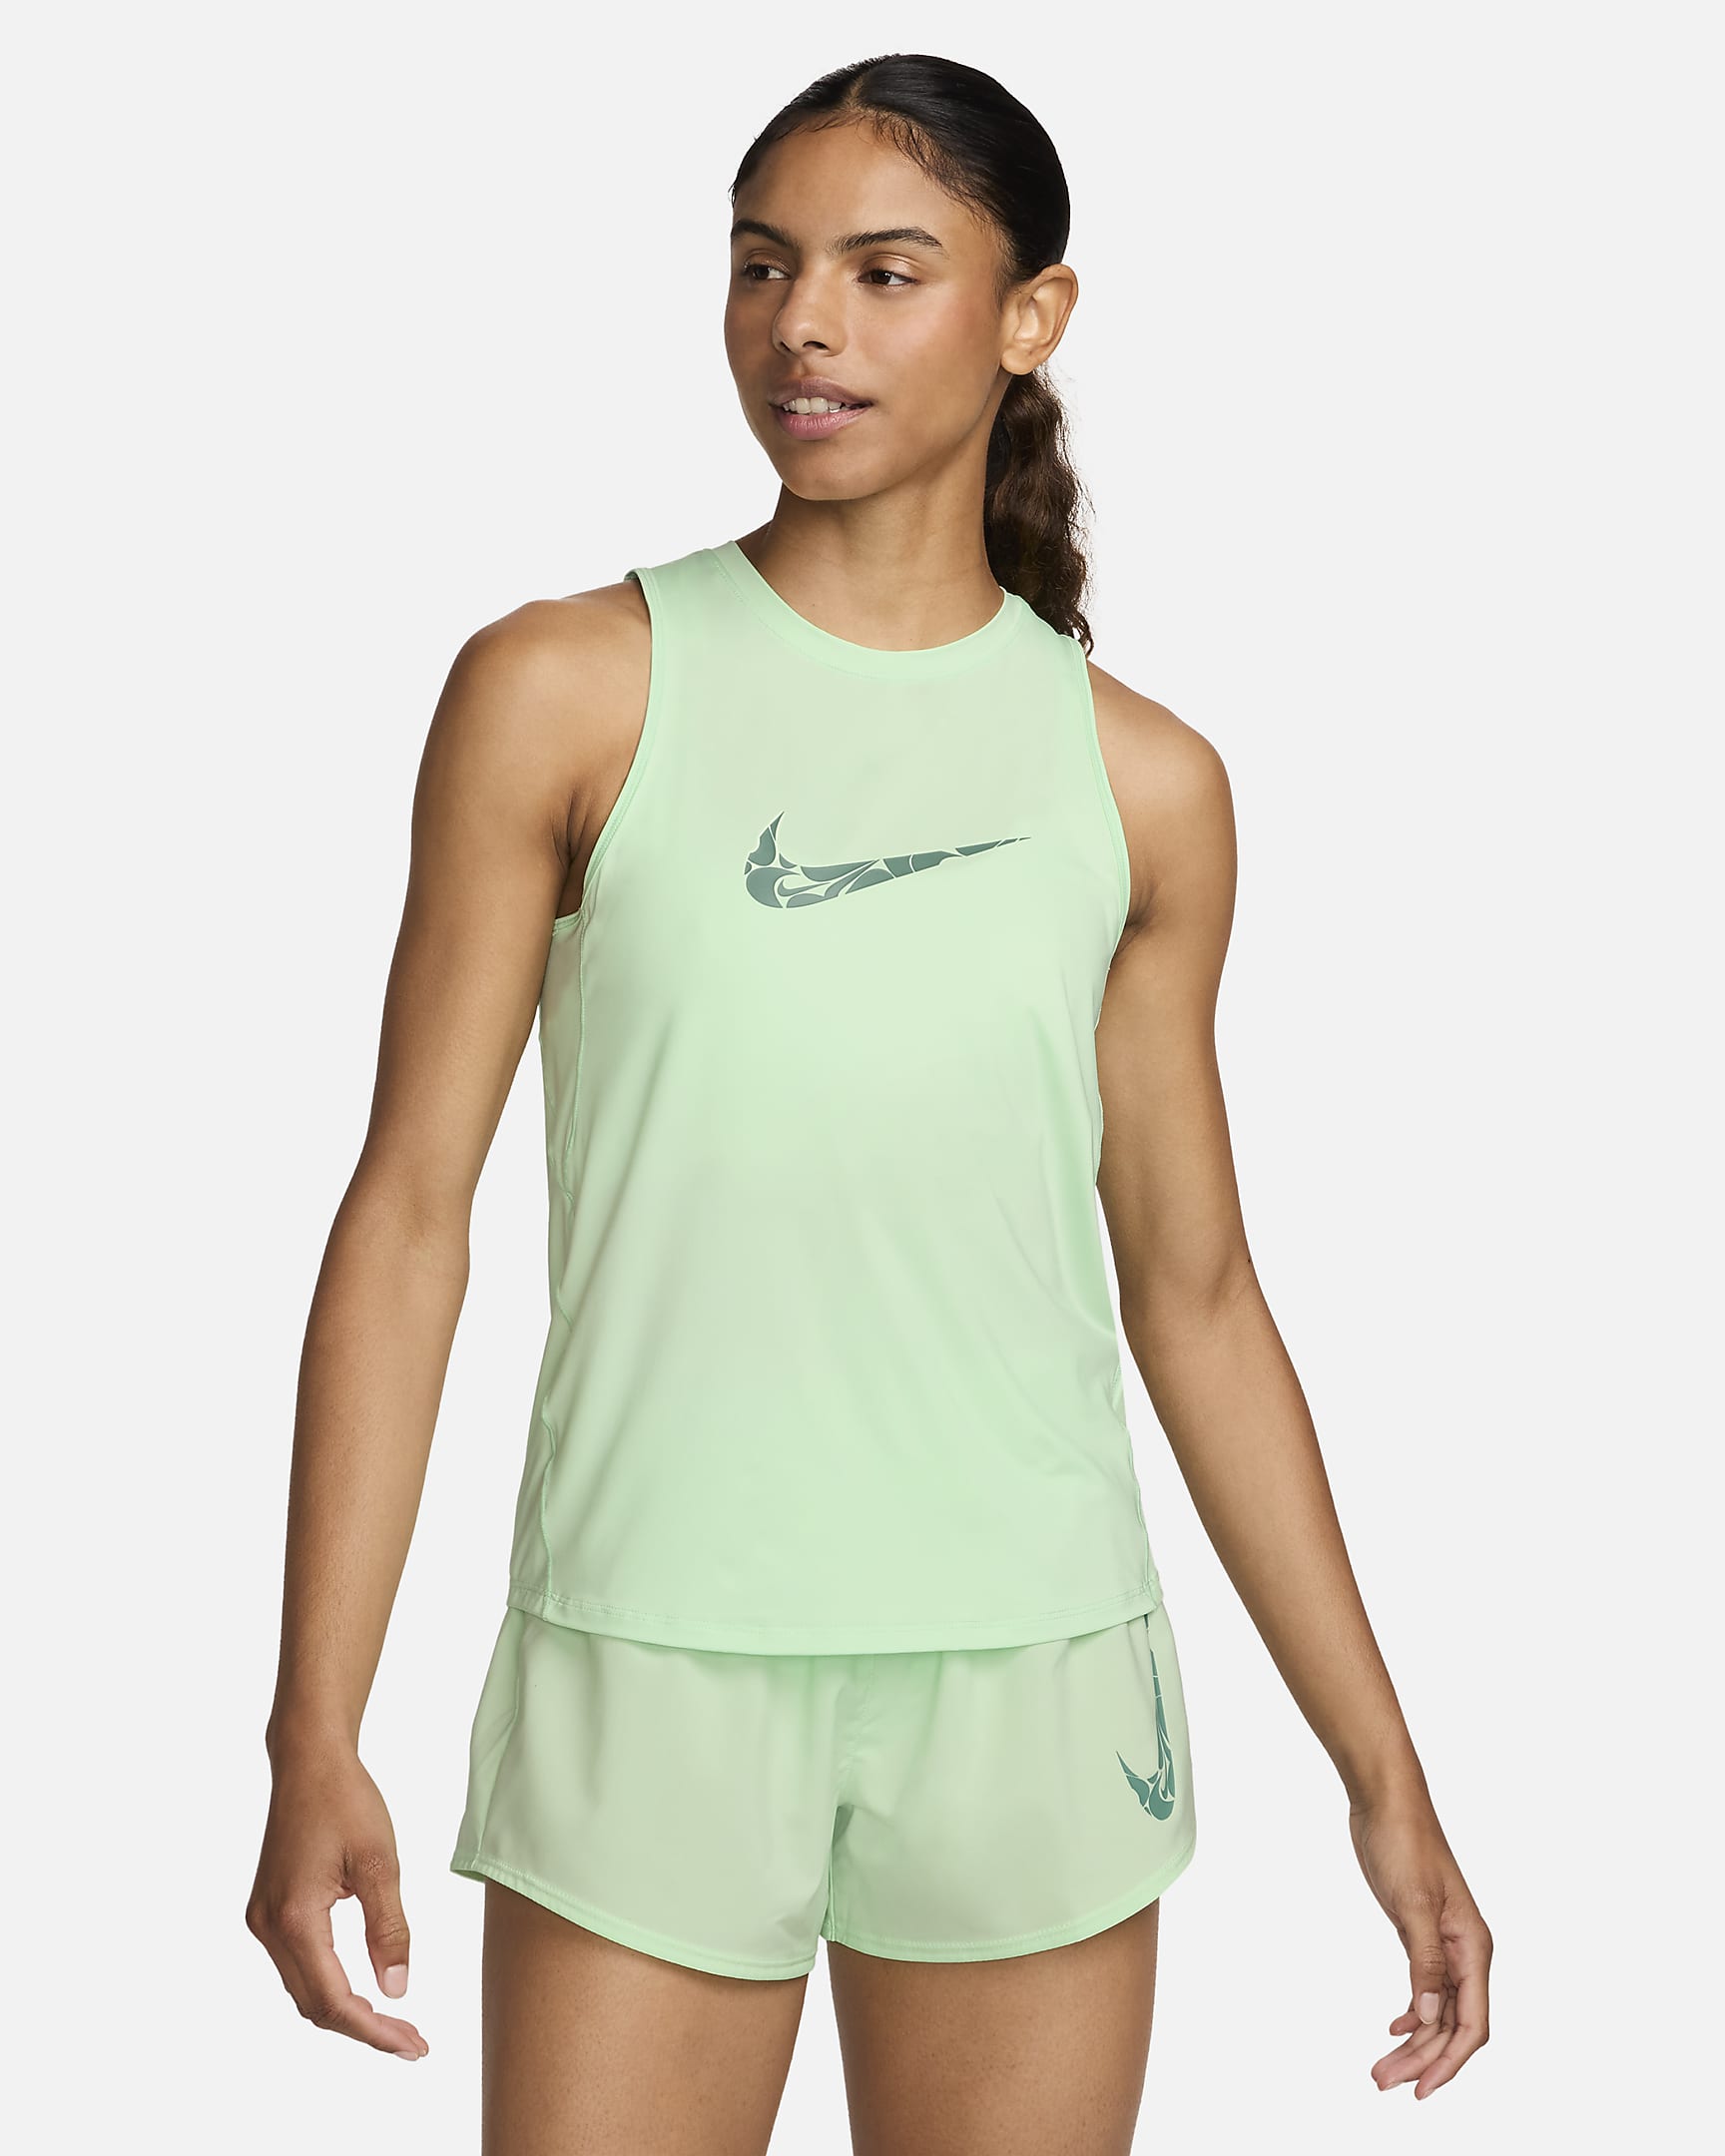 Nike One Lauf-Tanktop mit Grafik für Damen - Vapor Green/Bicoastal